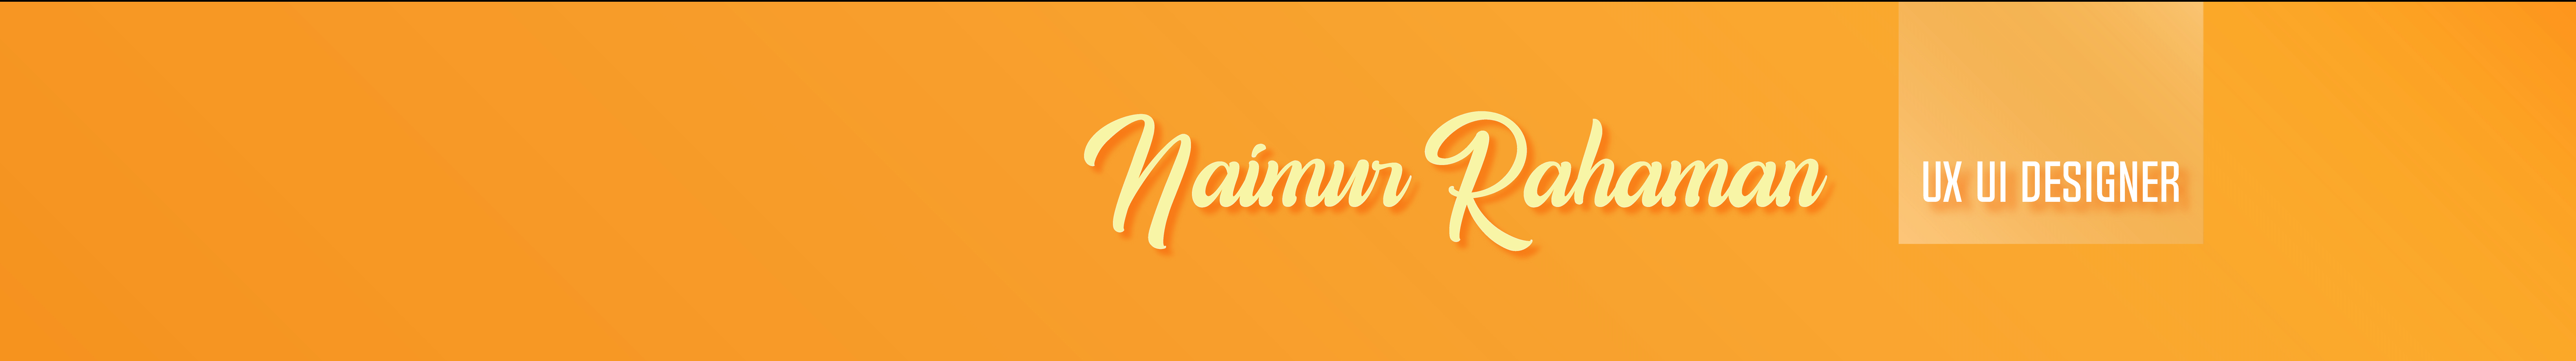 Naimur Rahaman's profile banner